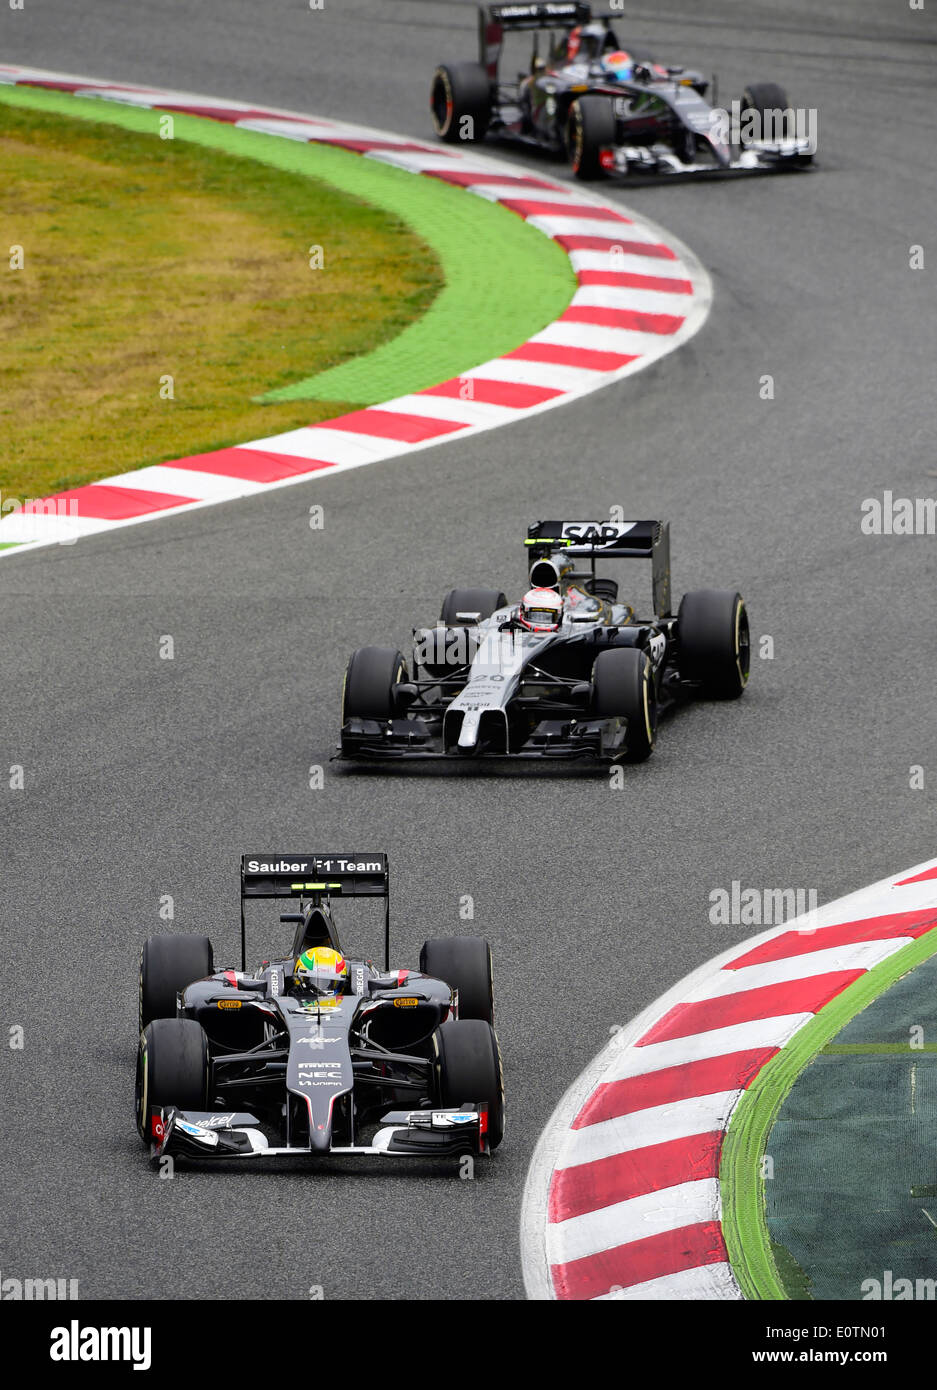 Grand Prix de Fórmula Uno de España 2014 ---- coches de carrera en curva Foto de stock